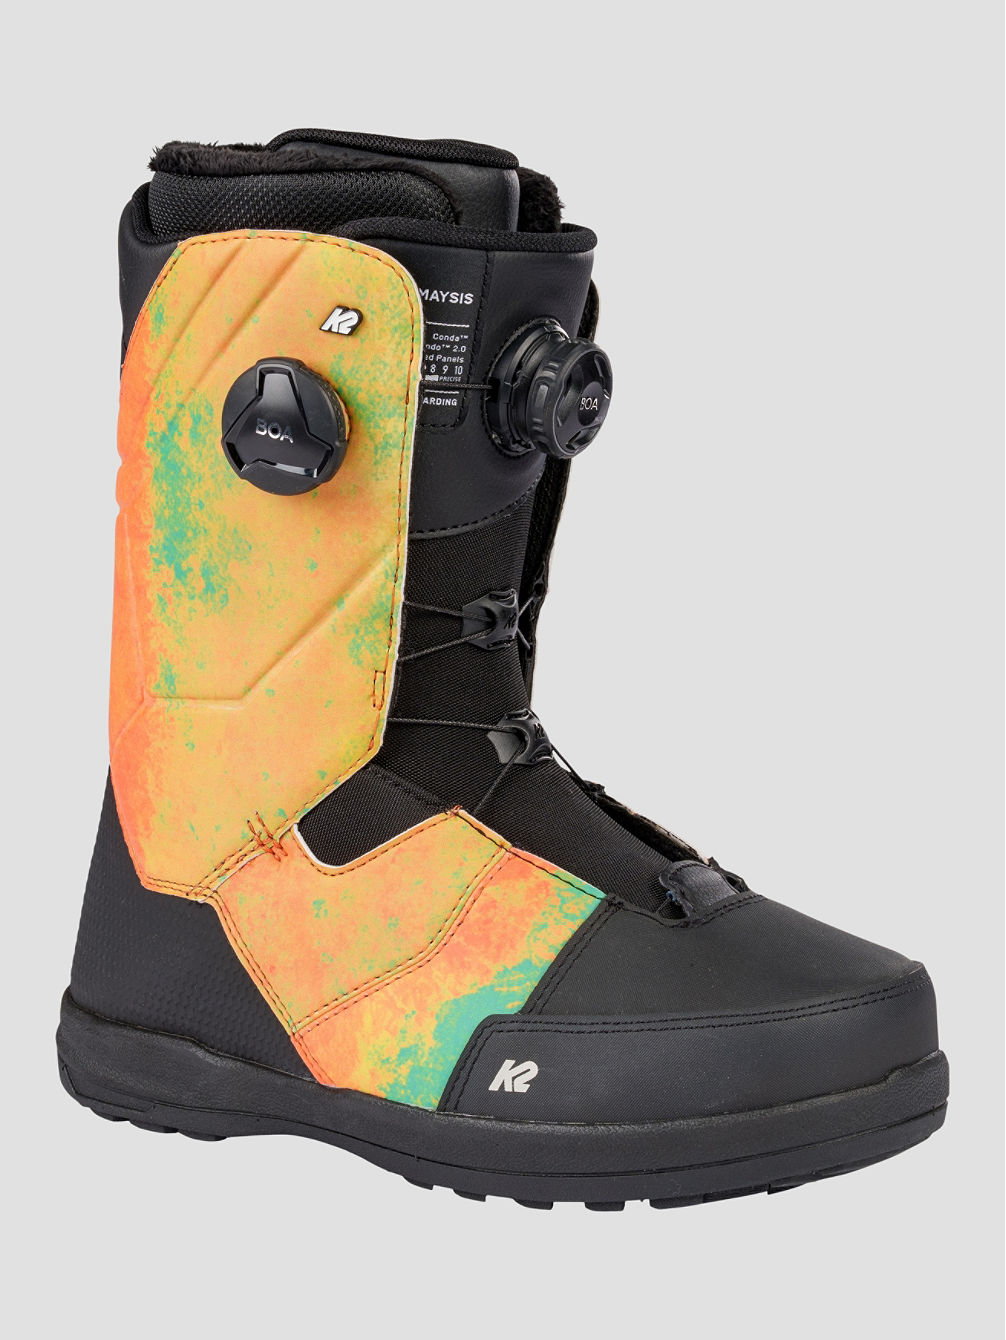 Maysis 2023 Snowboard schoenen